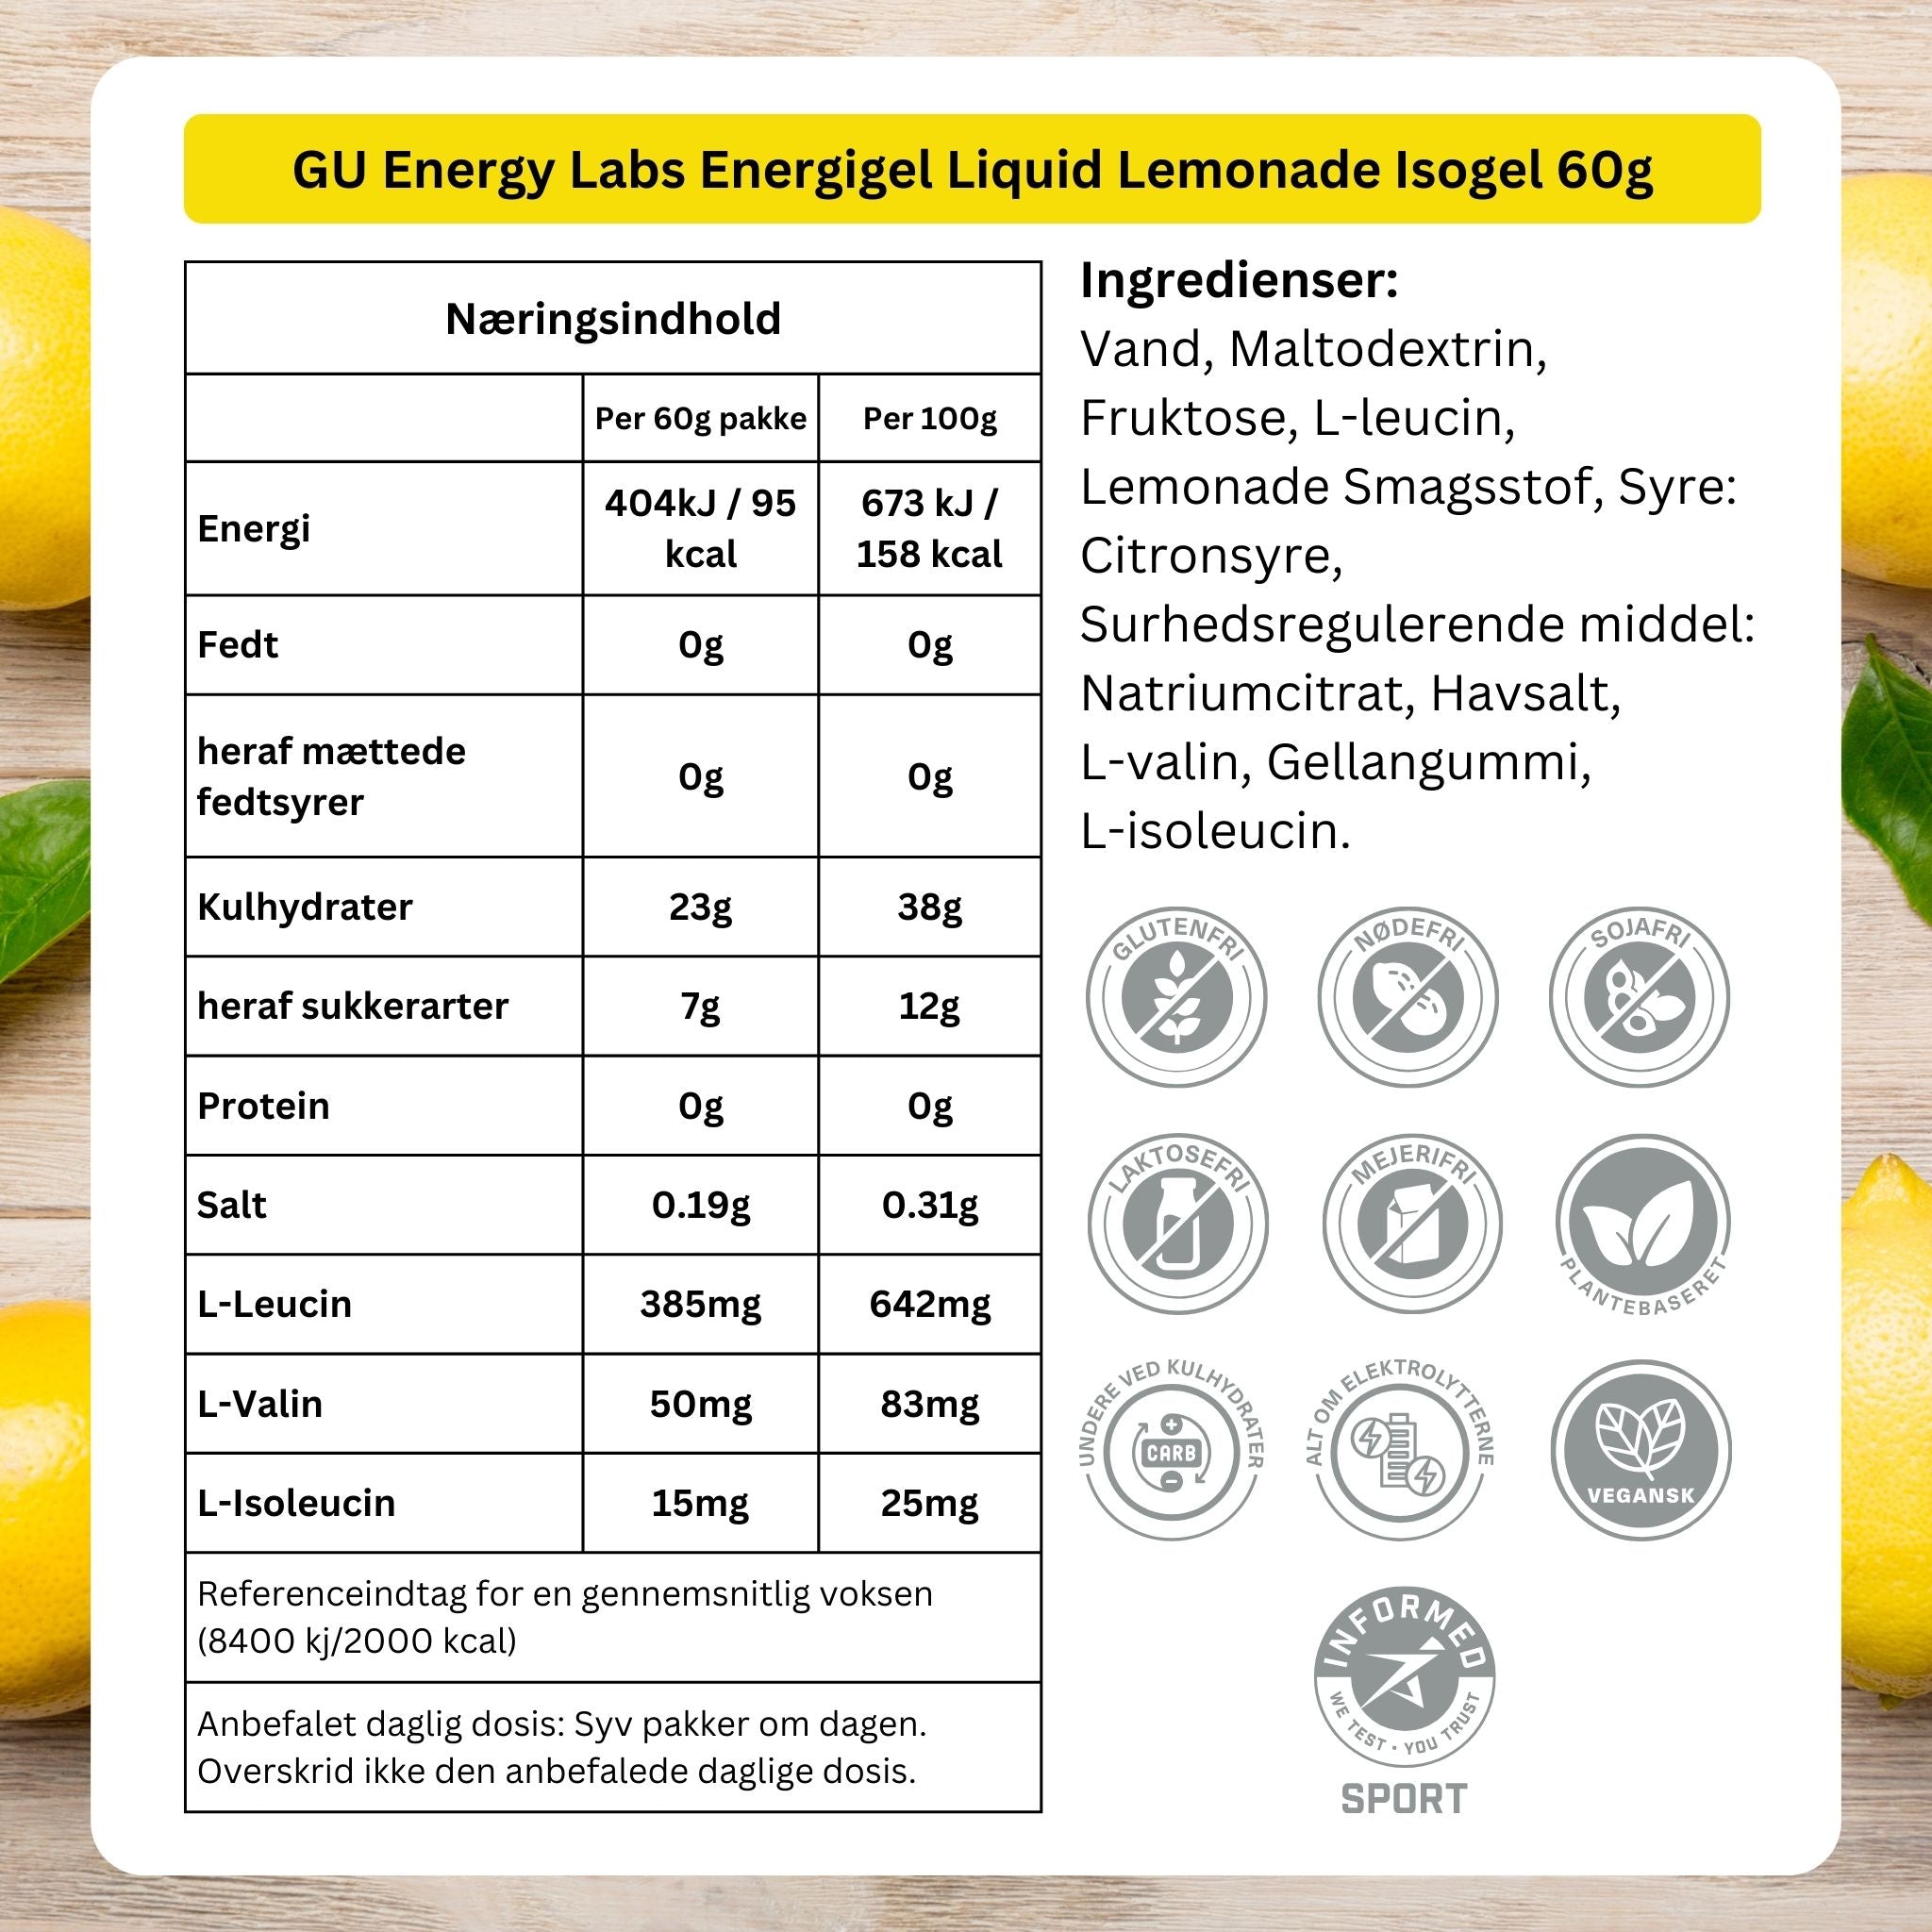 GU Energy Labs Energigel Liquid Lemonade Isogel 60g - 12 pack